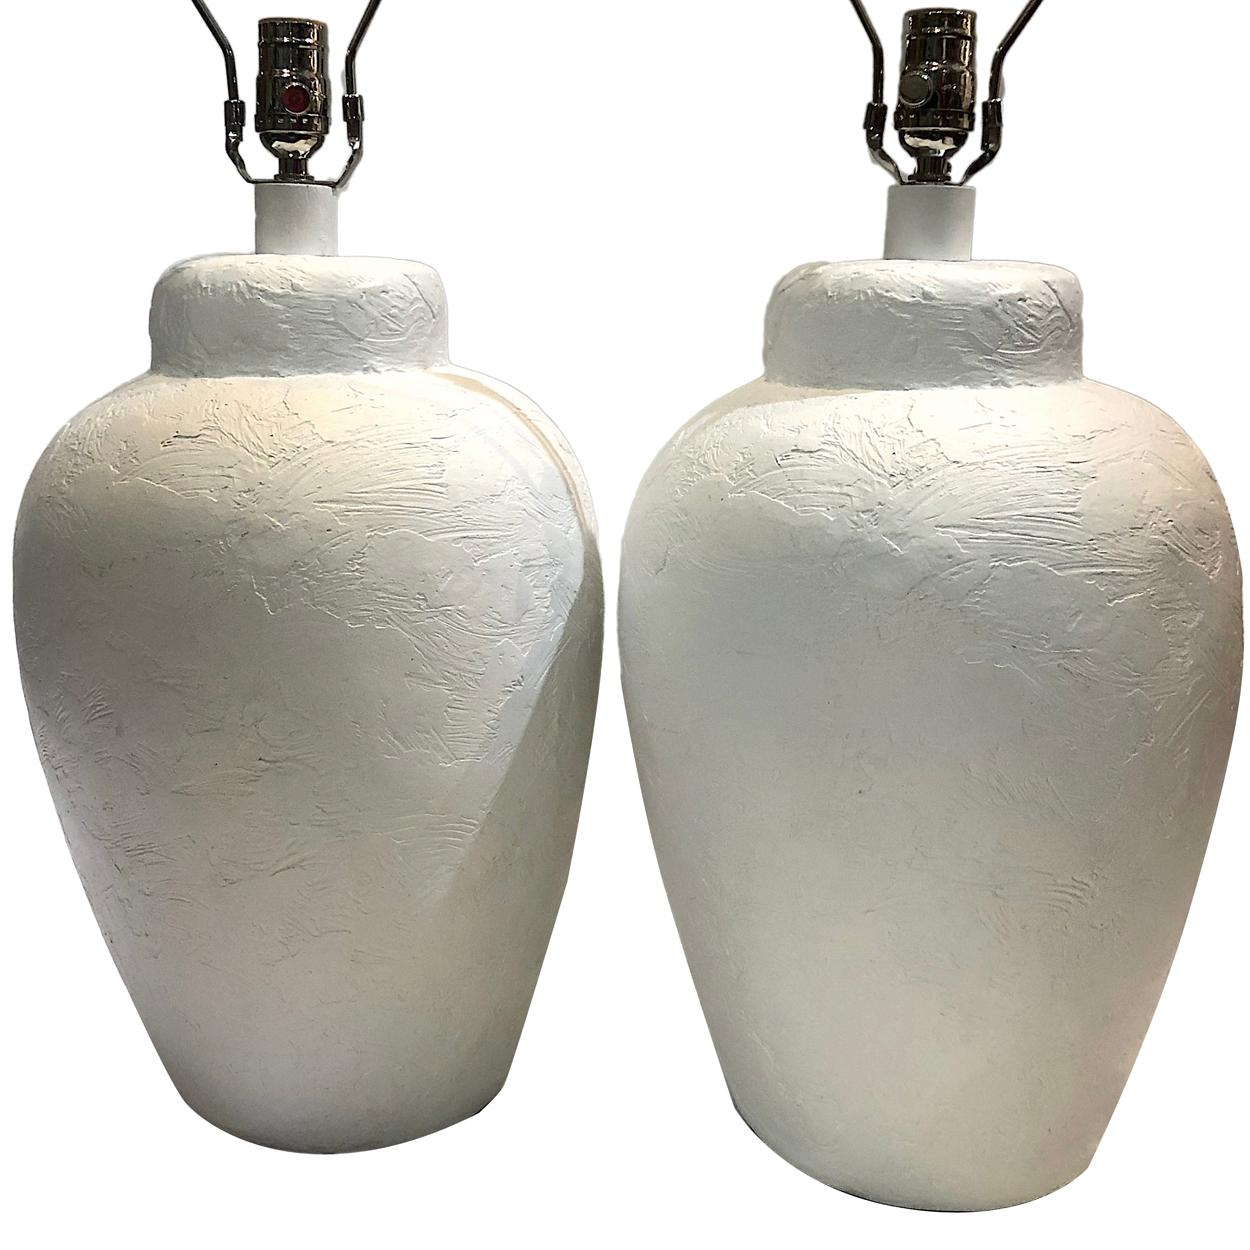 Ein Paar italienische Tischlampen aus weißer Keramik mit Textur aus den 1960er Jahren.

Abmessungen:
Höhe des Körpers 21